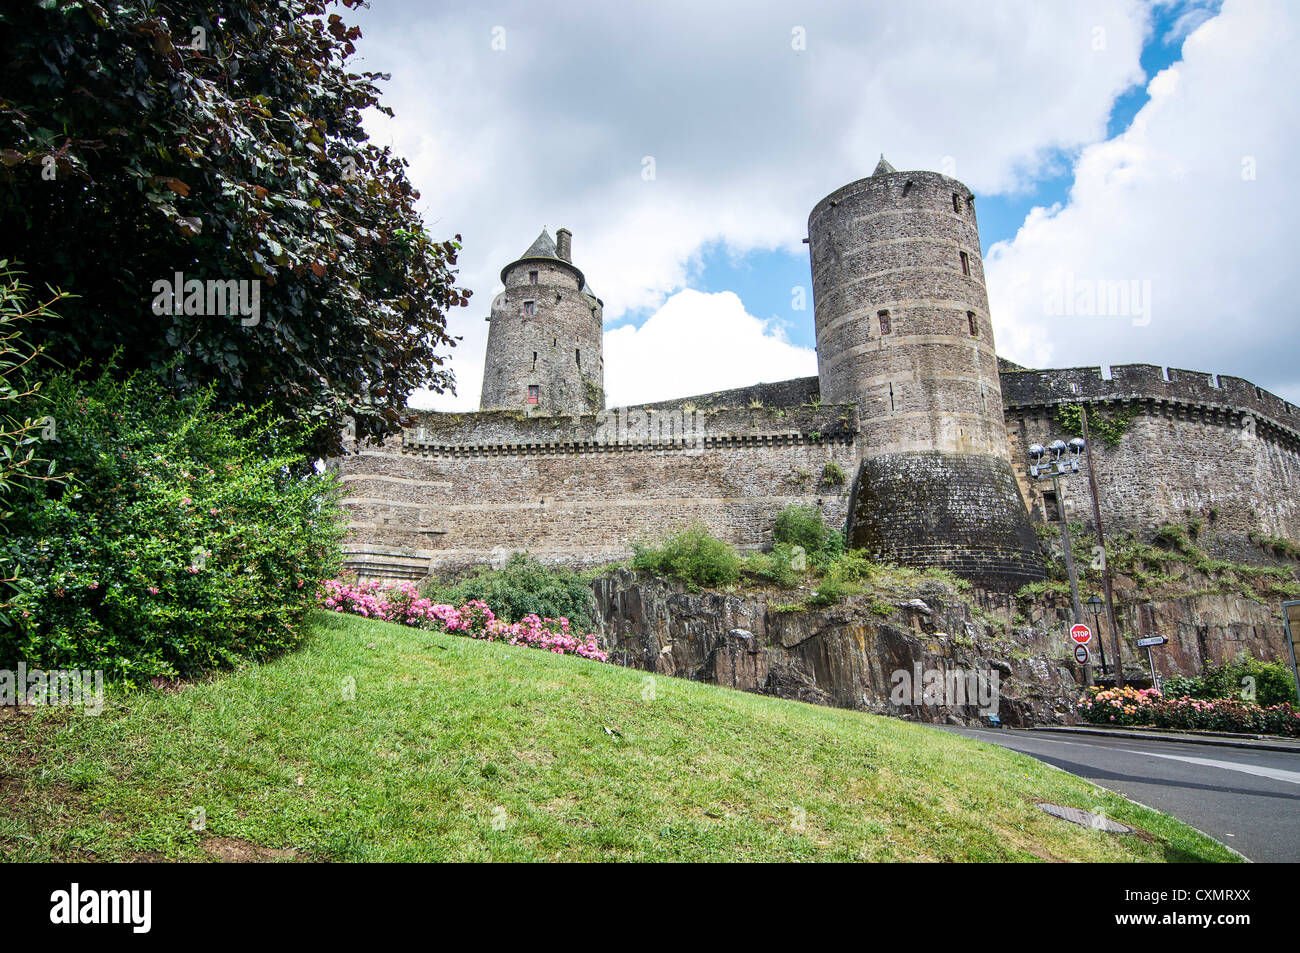 Torres de piedra redonda visibles en la pared de la fortaleza medieval Castillo de Fougeres en Brittany, Francia. Foto de stock